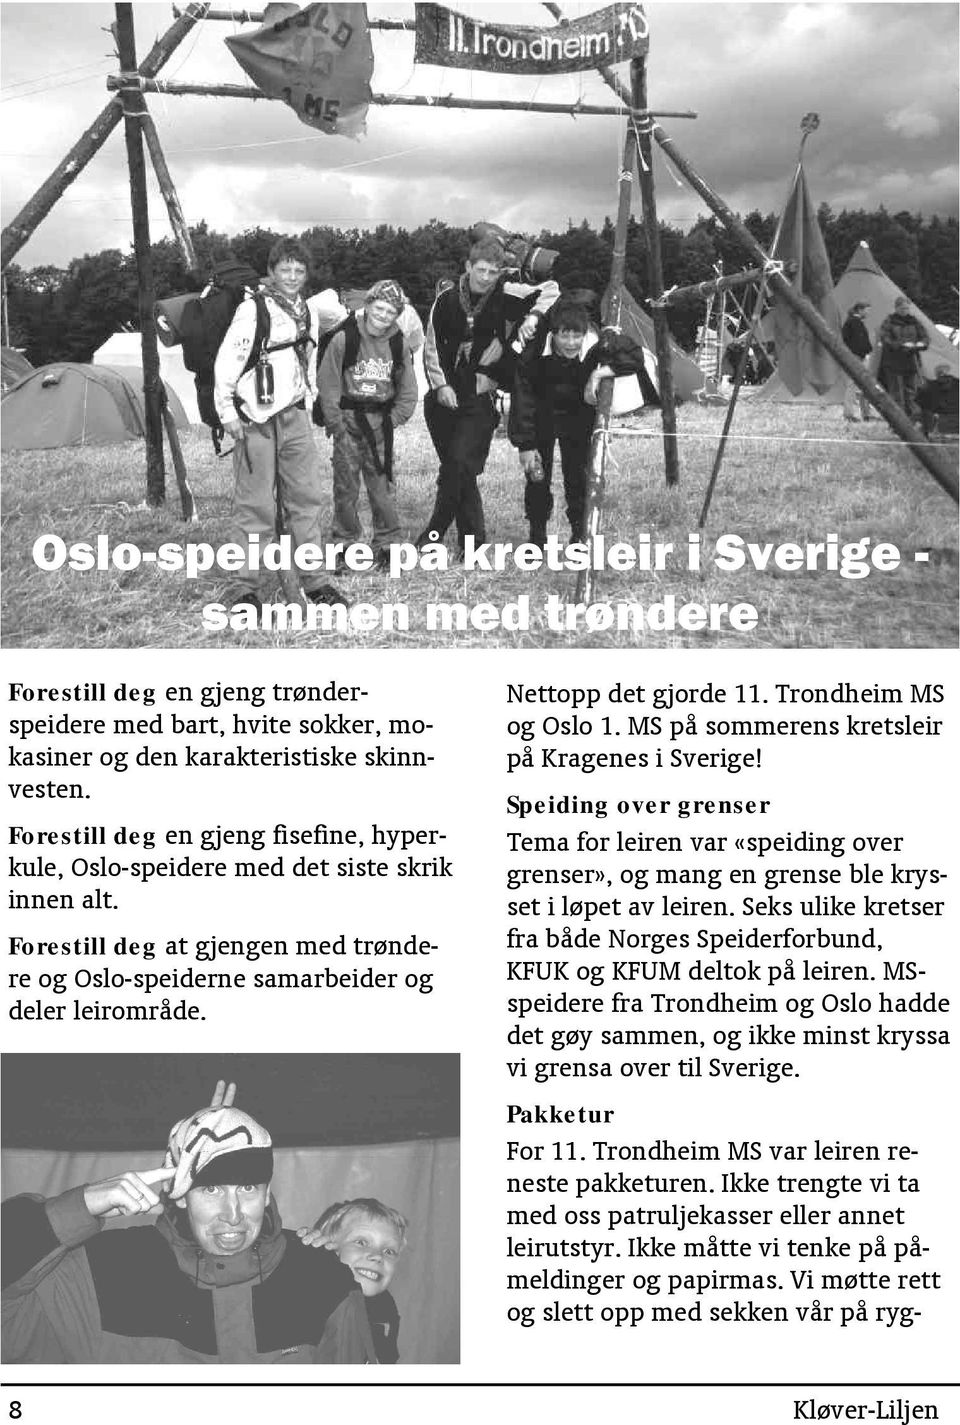 Trondheim MS og Oslo 1. MS på sommerens kretsleir på Kragenes i Sverige! Speiding over grenser Tema for leiren var «speiding over grenser», og mang en grense ble krysset i løpet av leiren.